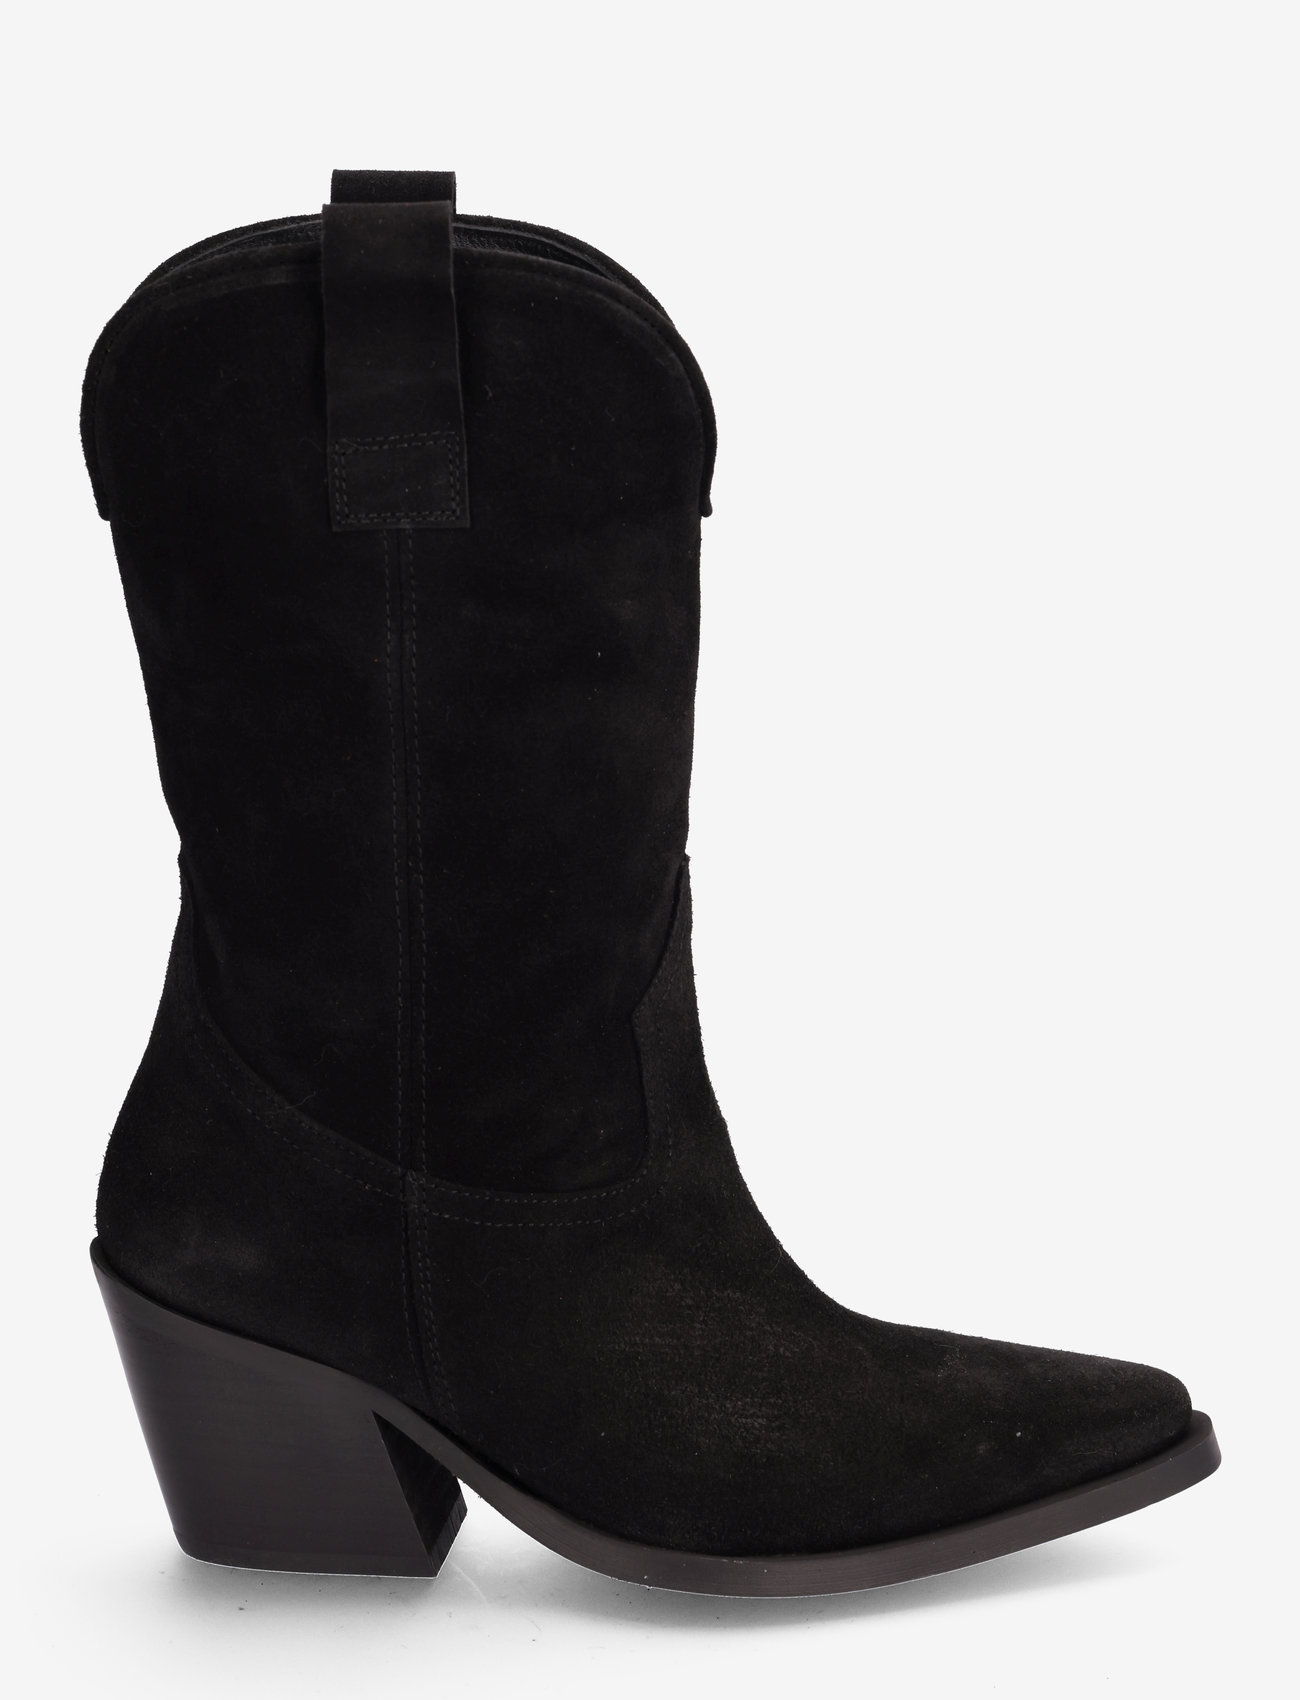 Billi Bi - Booties - high heel - black suede - 1